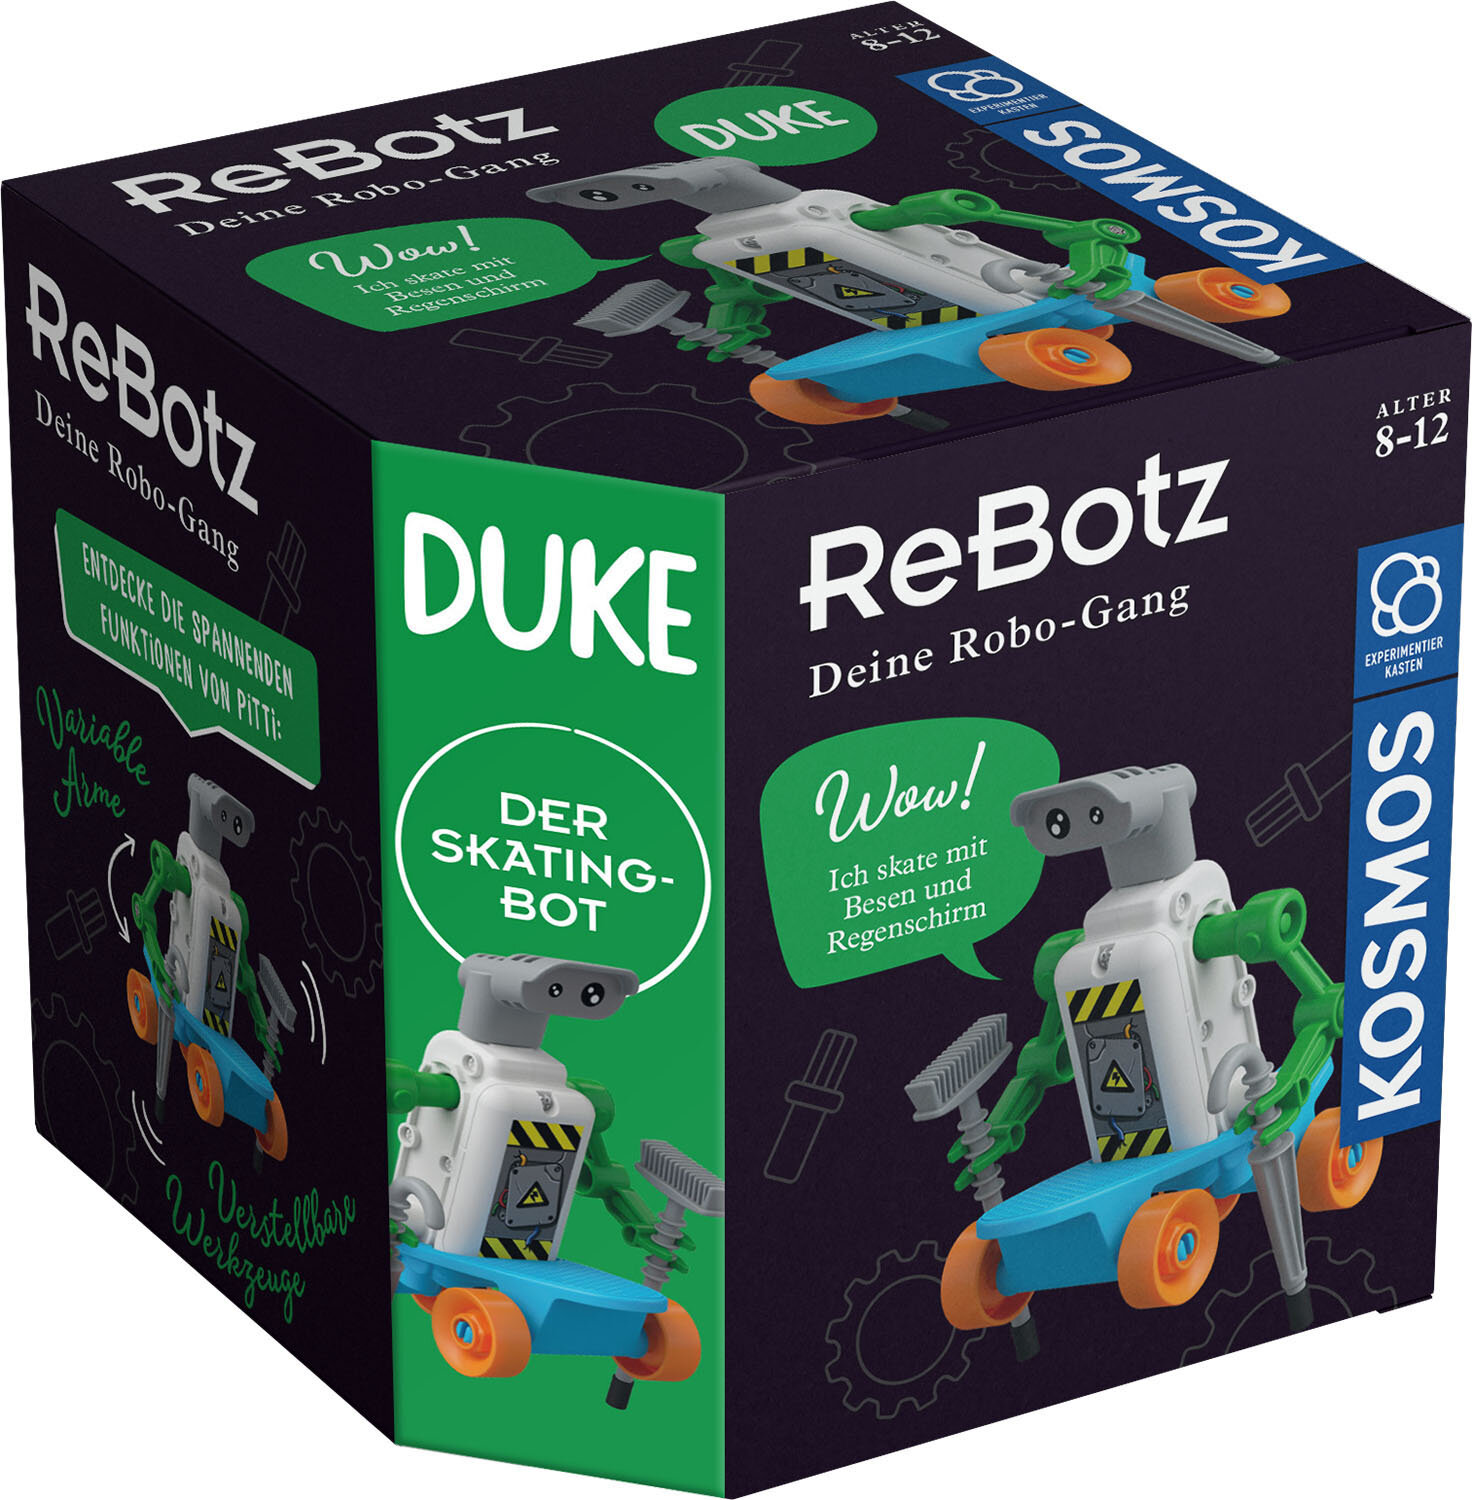 ReBotz - Duke der Skating Bot